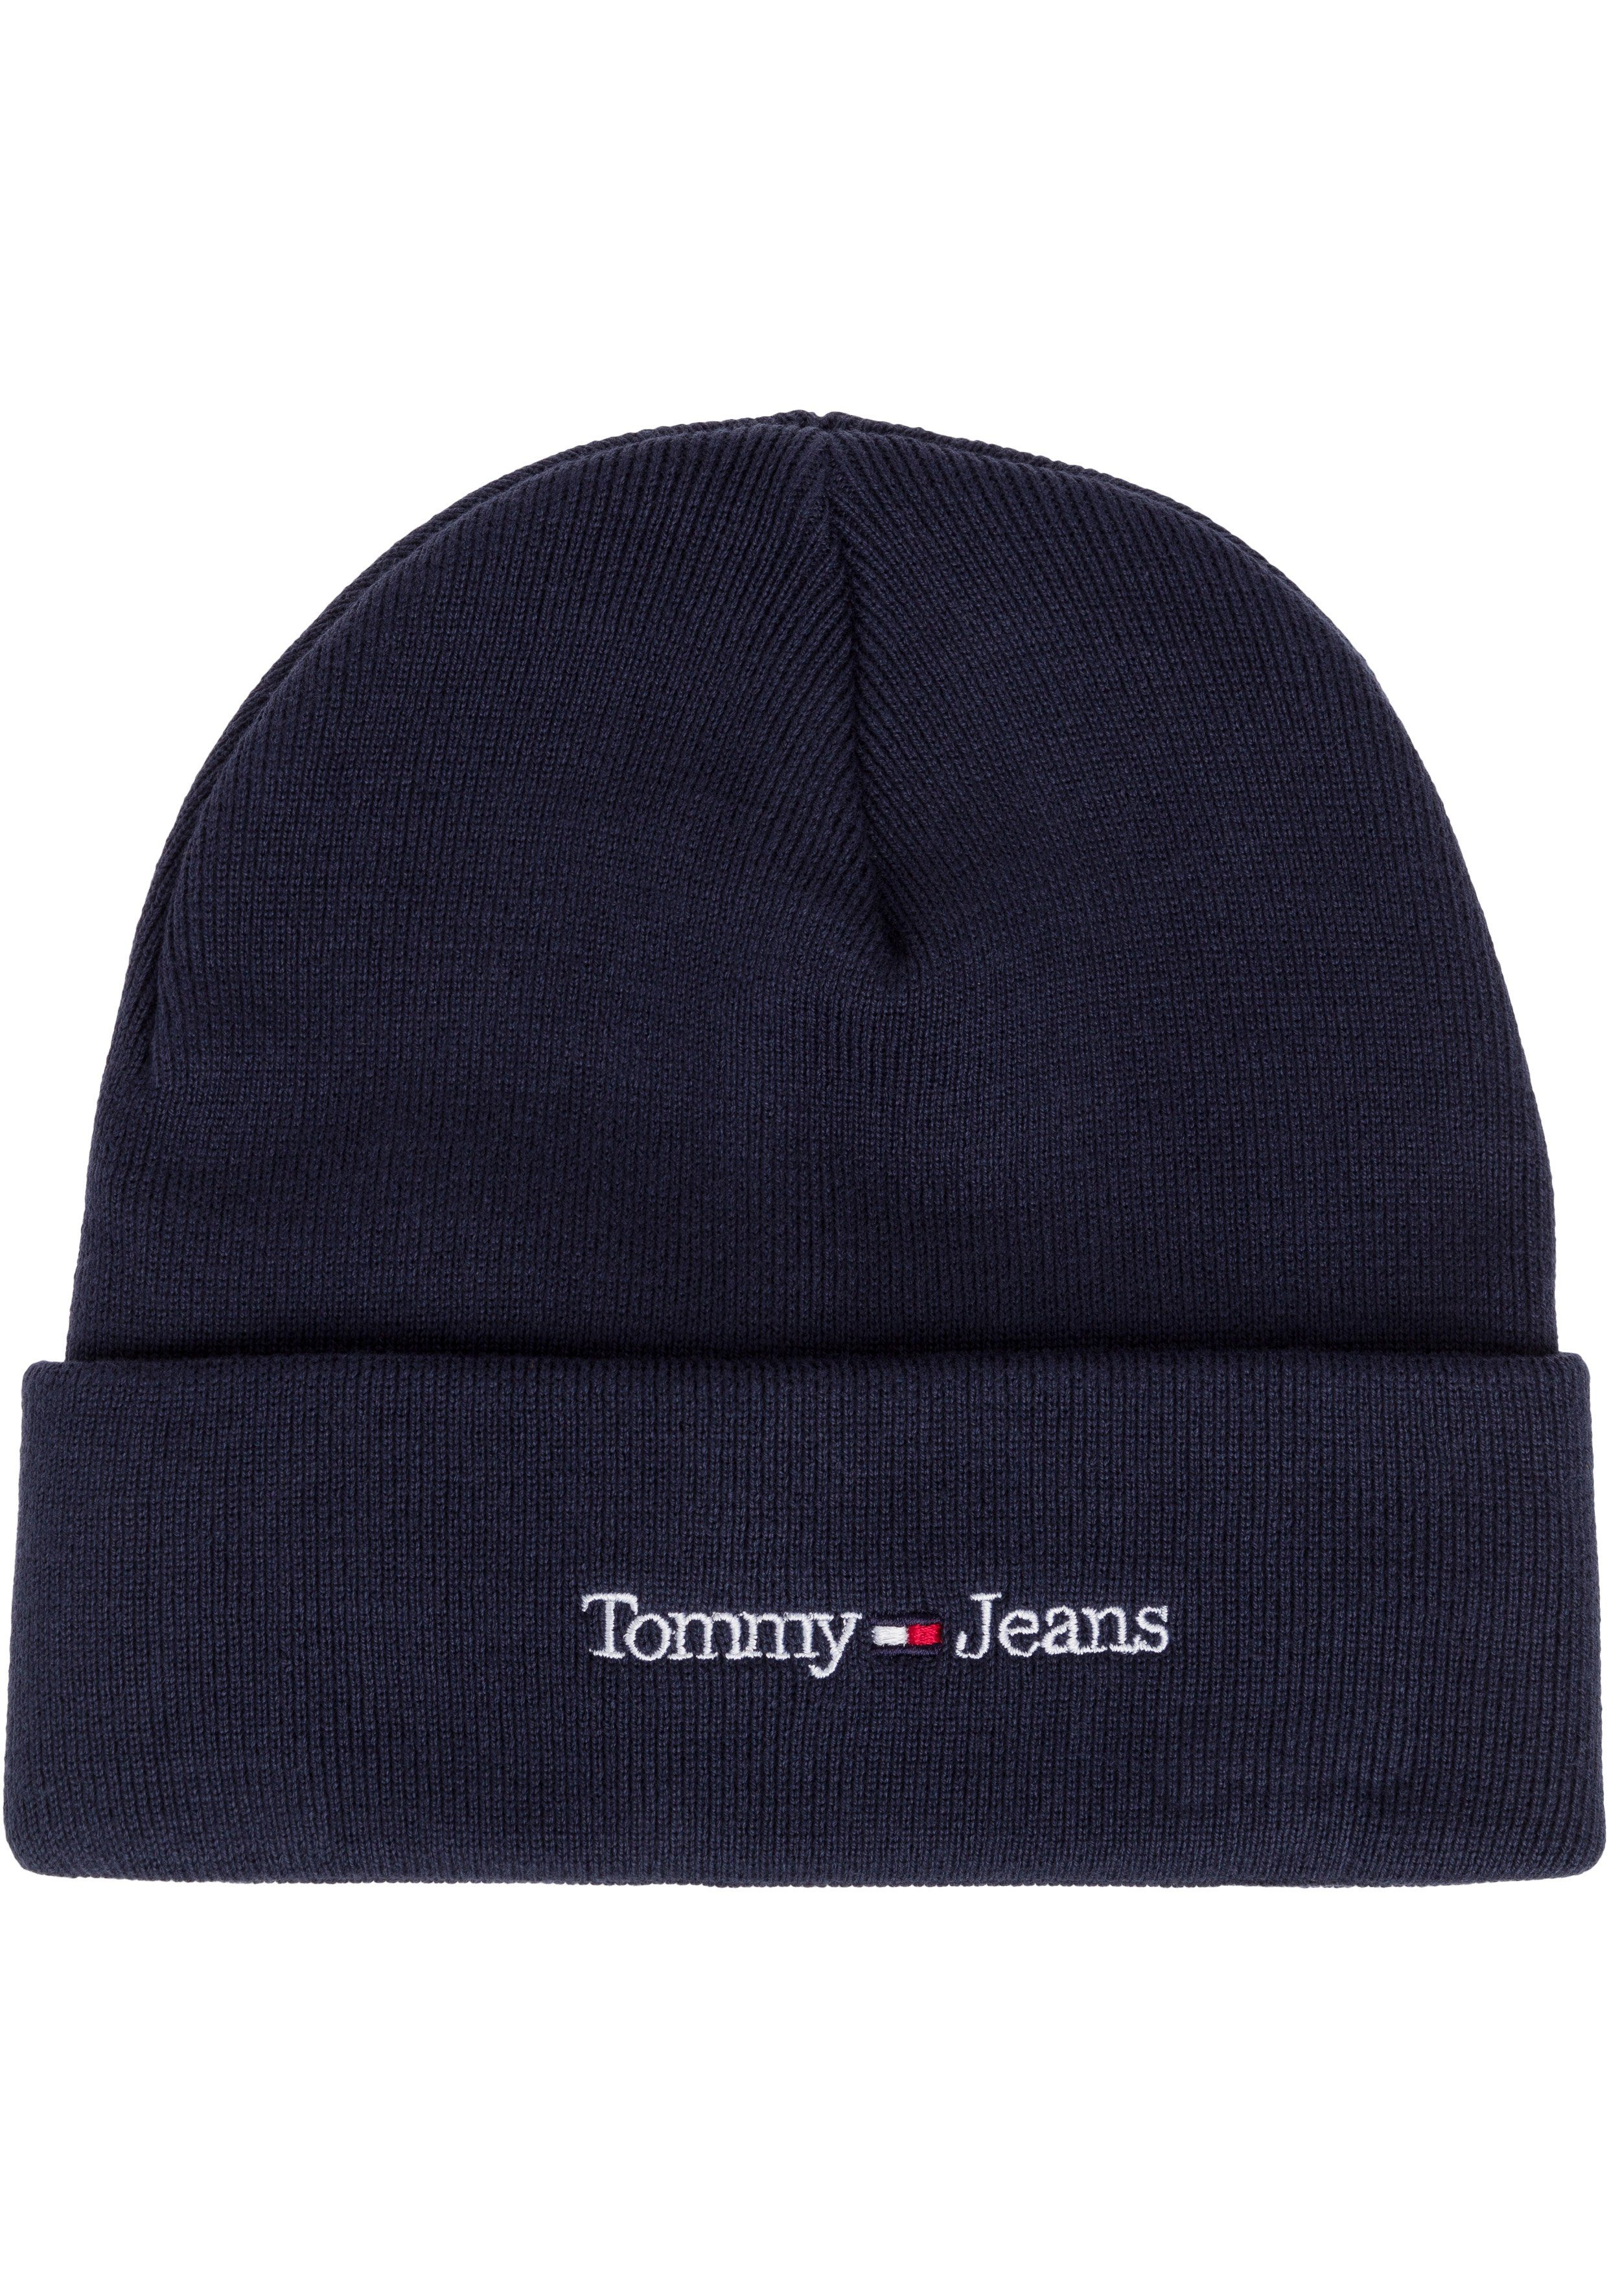 Mode Tommy Jeans Beanie cooler Style Eigenschaften wärmenden mit navy